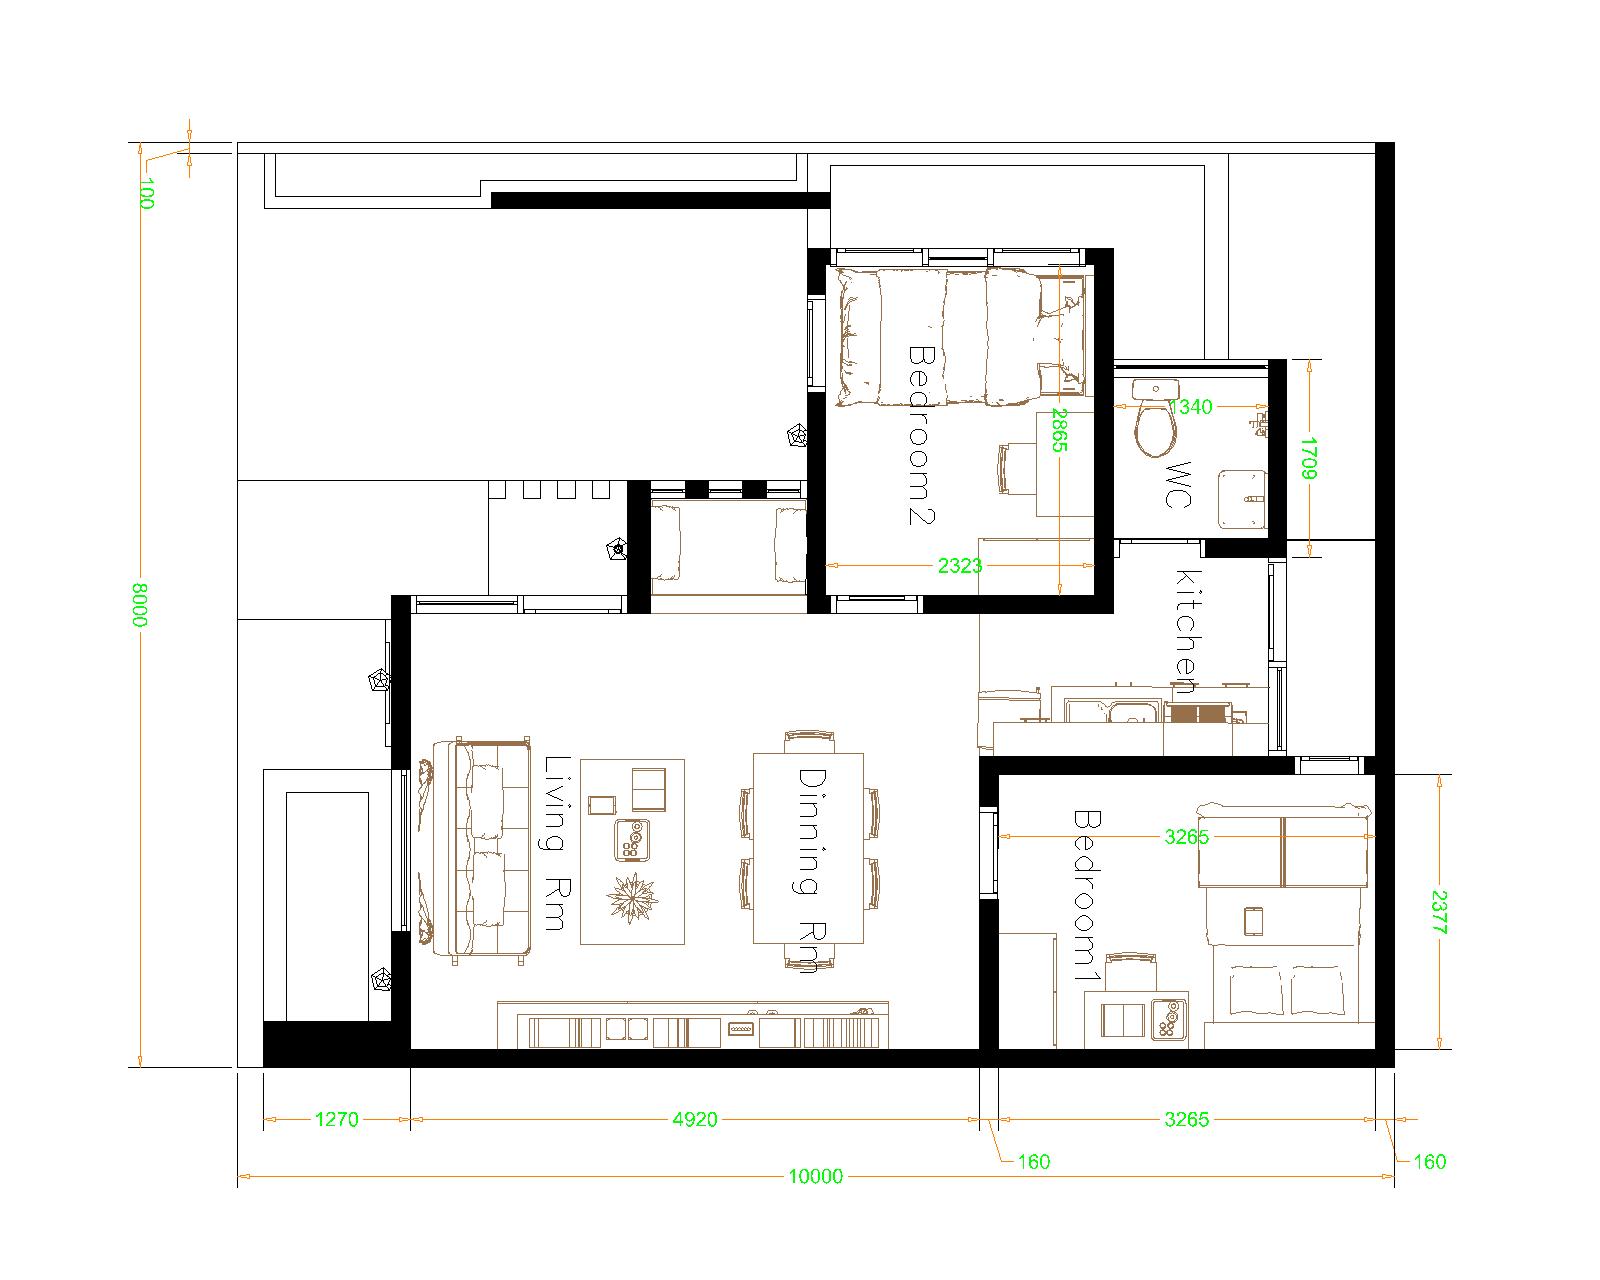 House design 8x10 with 2 Bedrooms Terrace roof floor plan